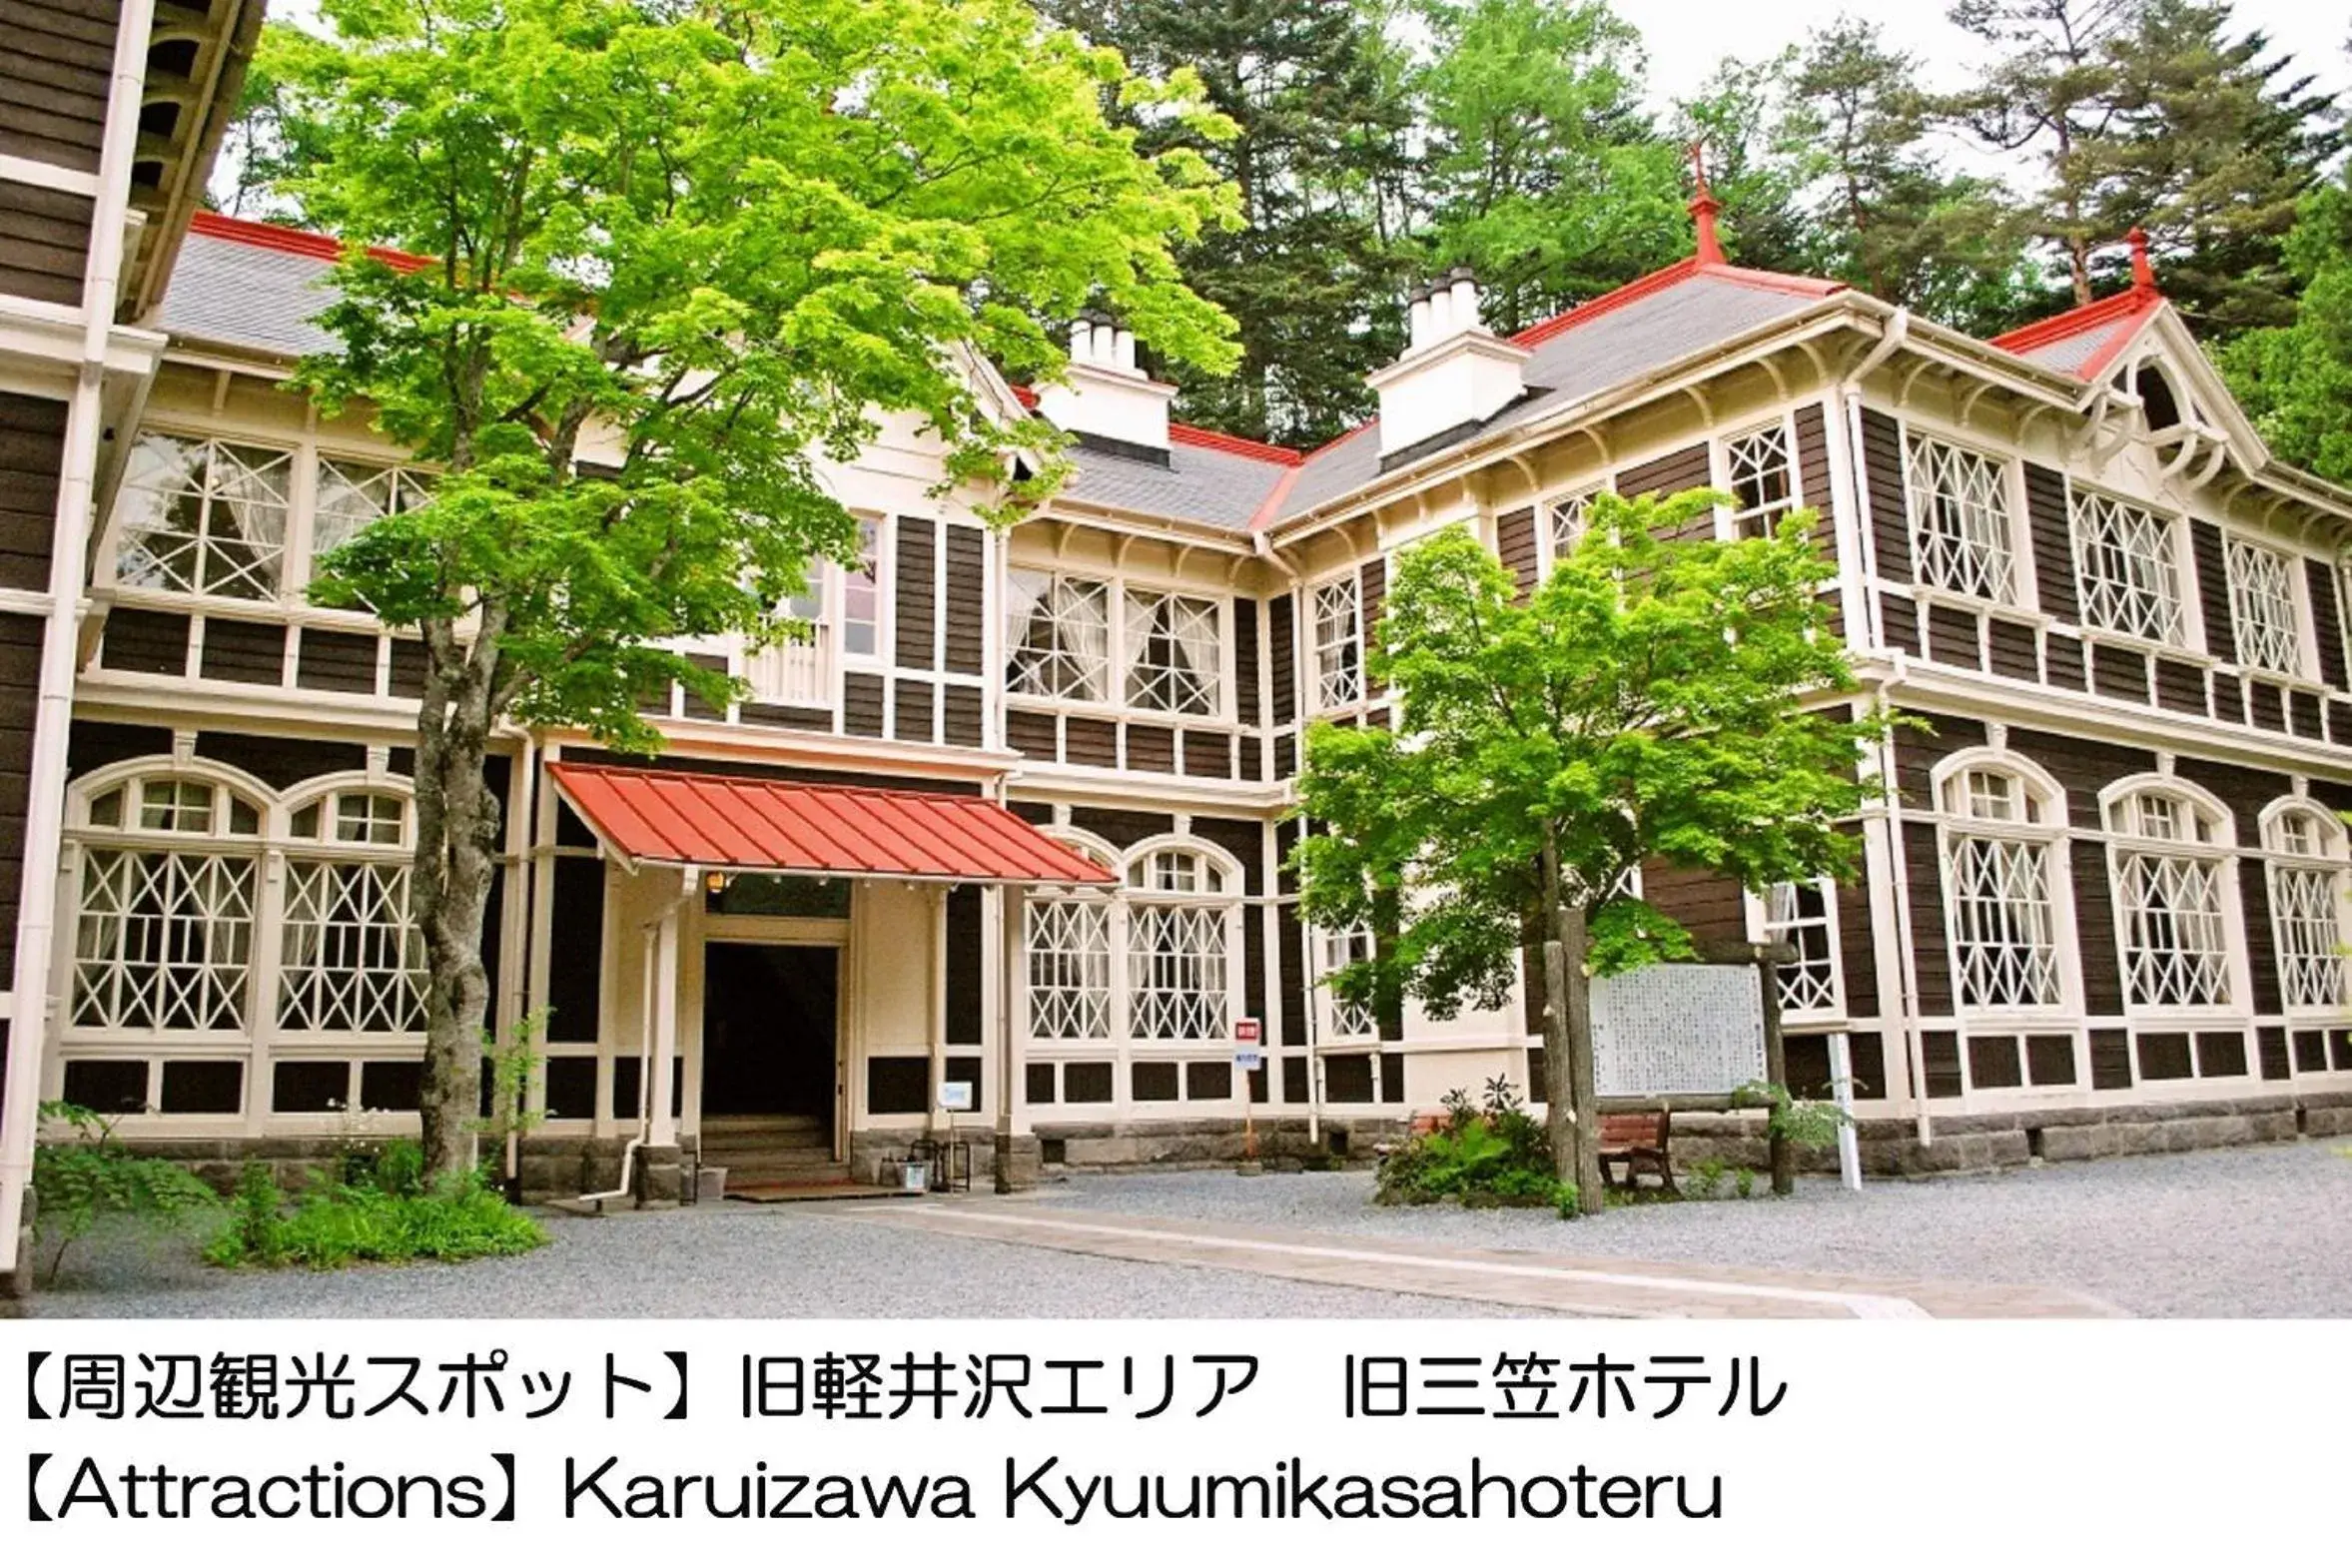 Nearby landmark in Karuizawakurabu Hotel 1130 Hewitt Resort